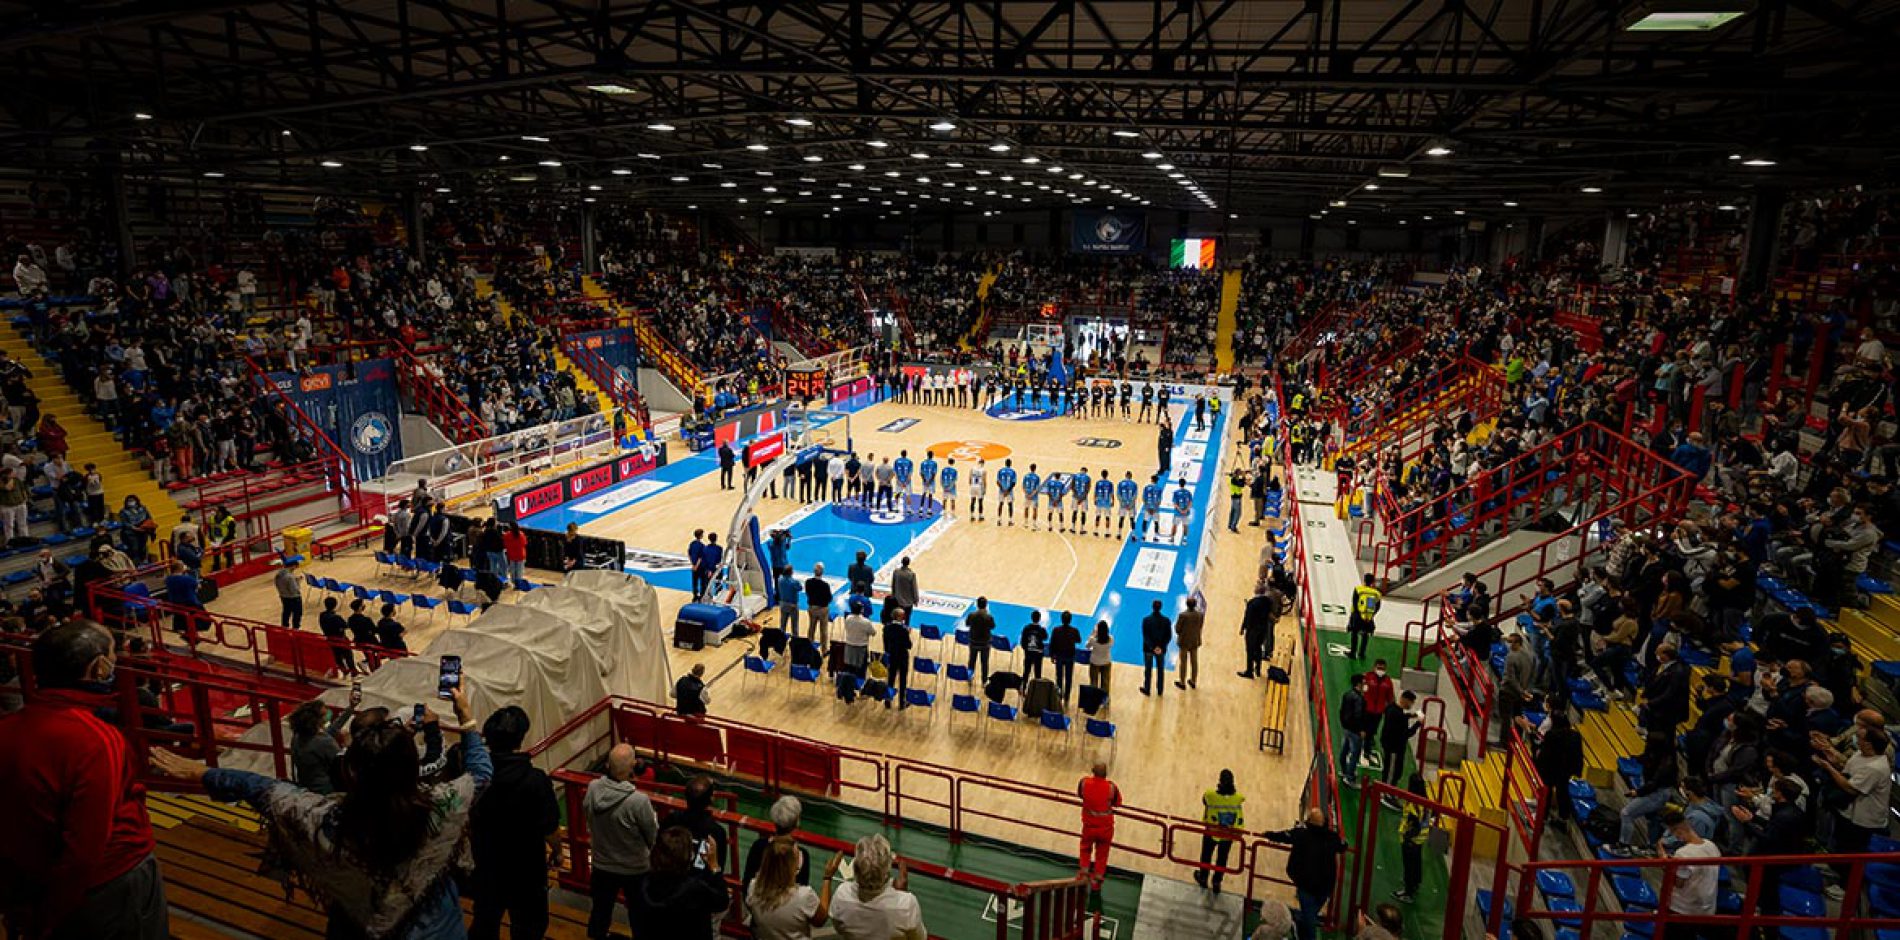 Impresa della Gevi Napoli Basket, battuta la Virtus Bologna!